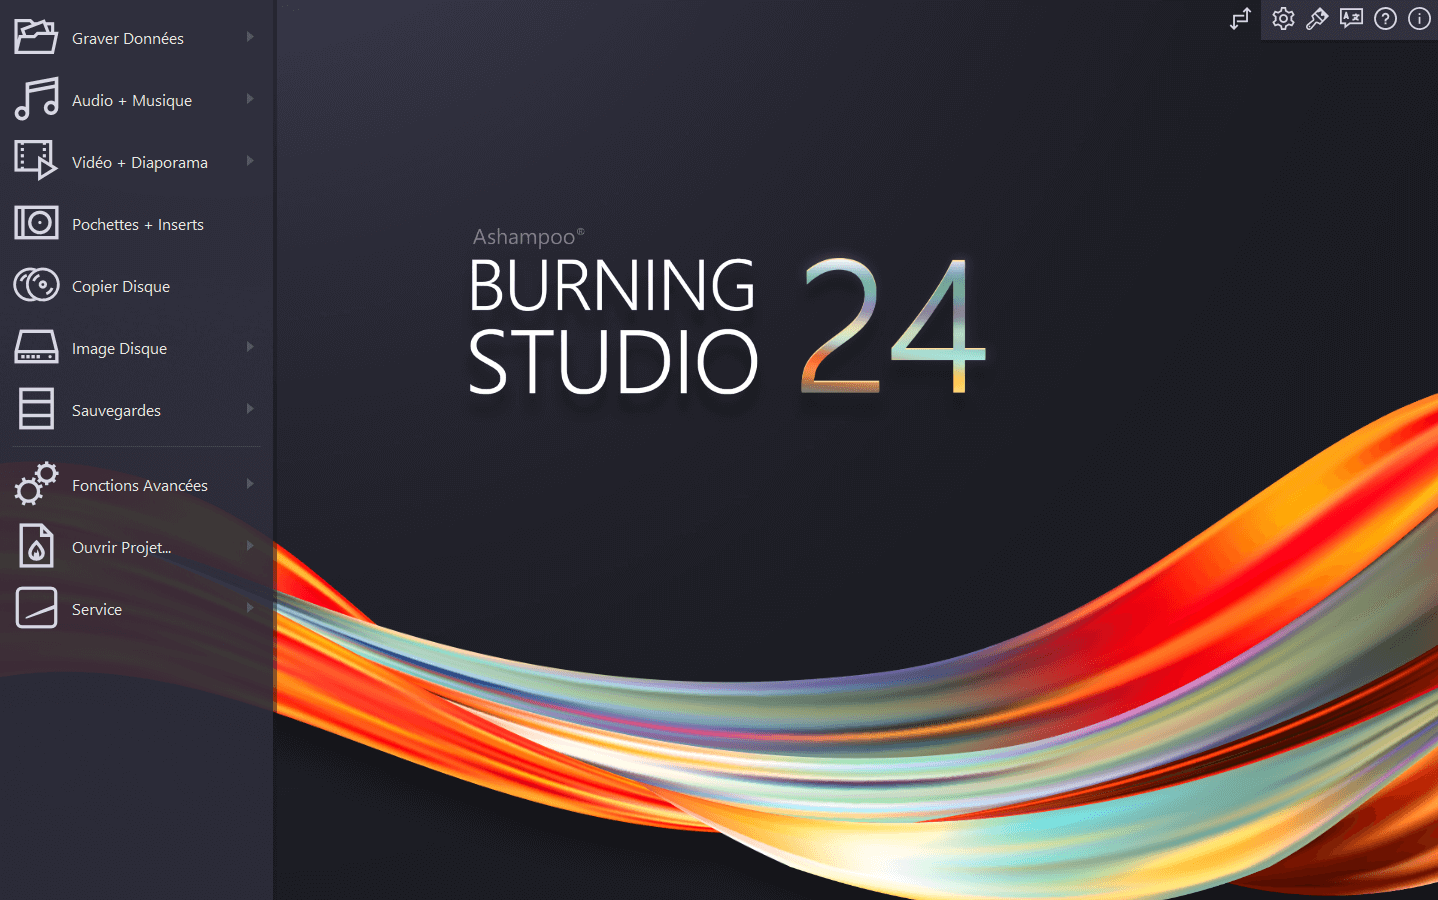 Ashampoo® Burning Studio 24 - Start dark